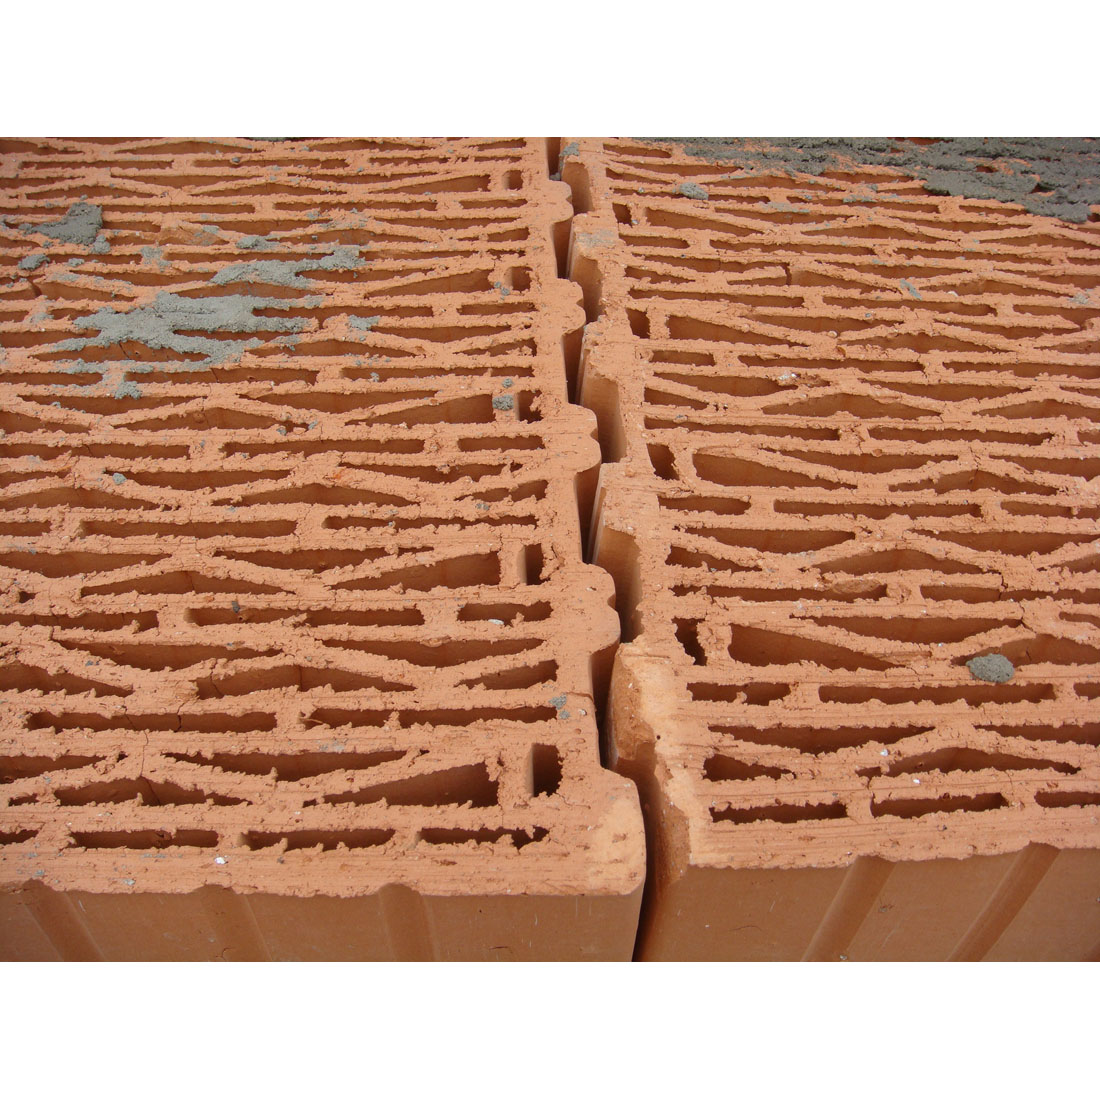 Отсутствие внутренних сквозных трещин – залог высокой прочности тёплой керамики SuperThermo 